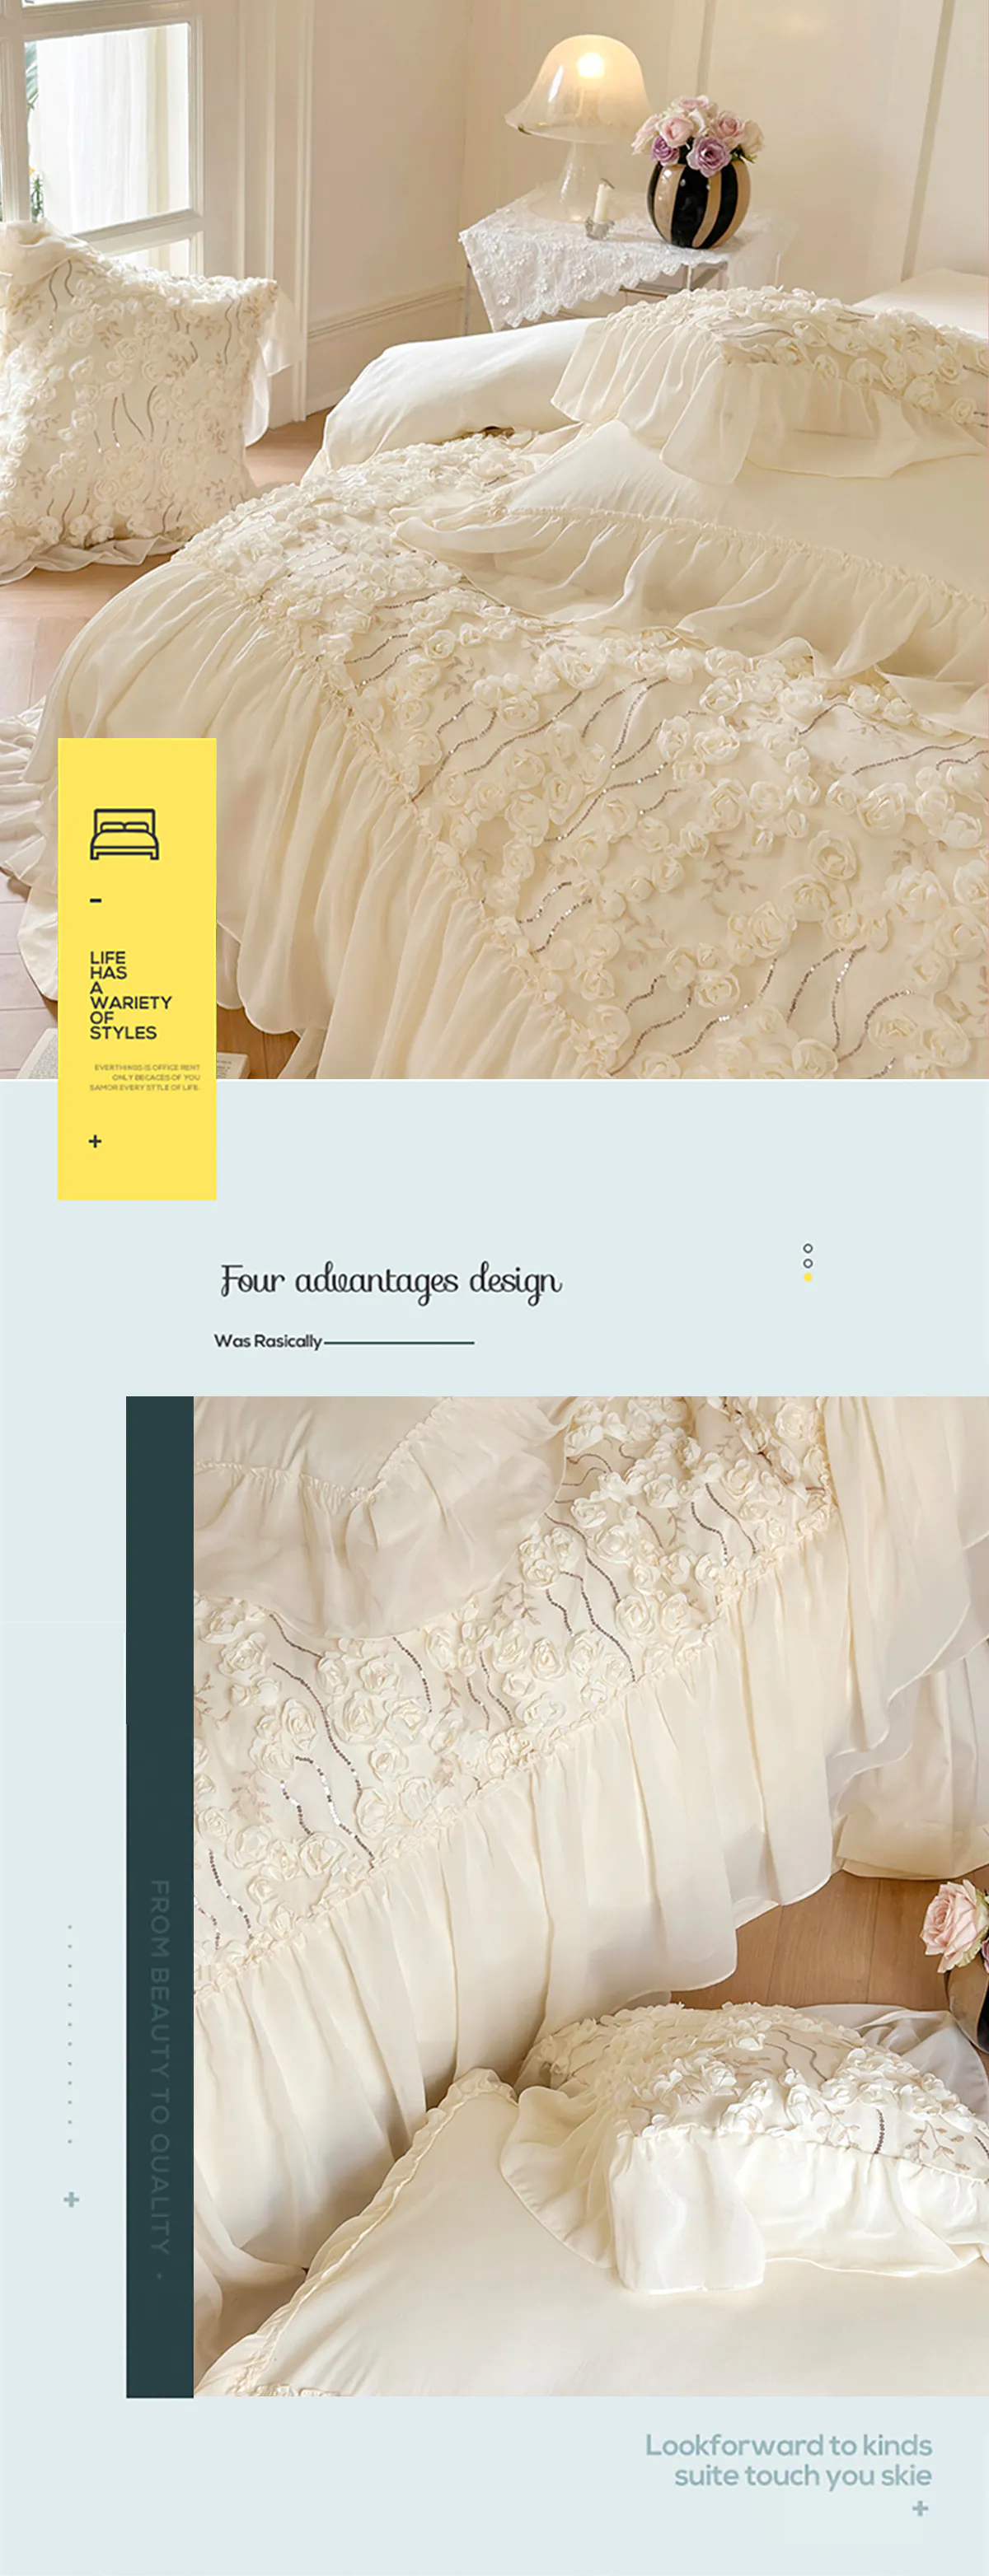 Aesthetic-140S-Long-Staple-Cotton-Chiffon-Lace-Floral-Bedding-Set11